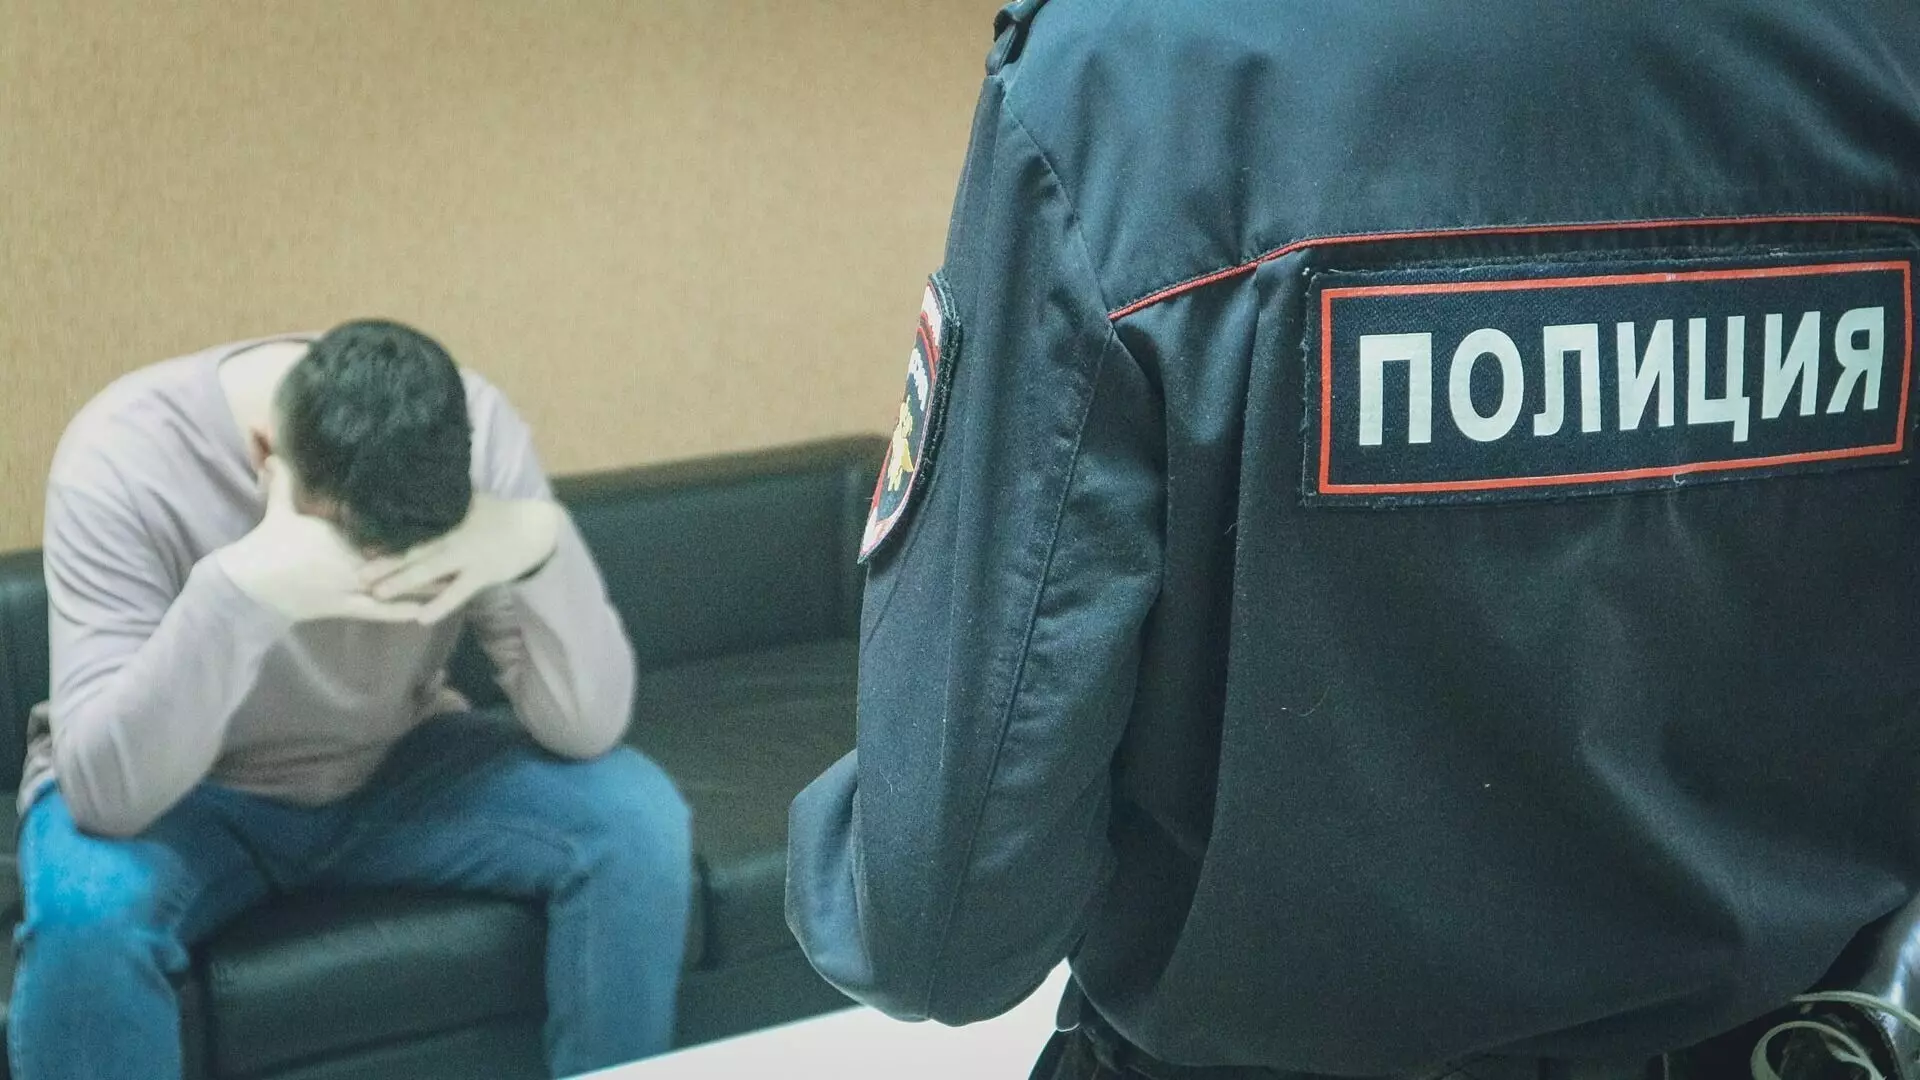 Уличного грабителя задержали в Волжском